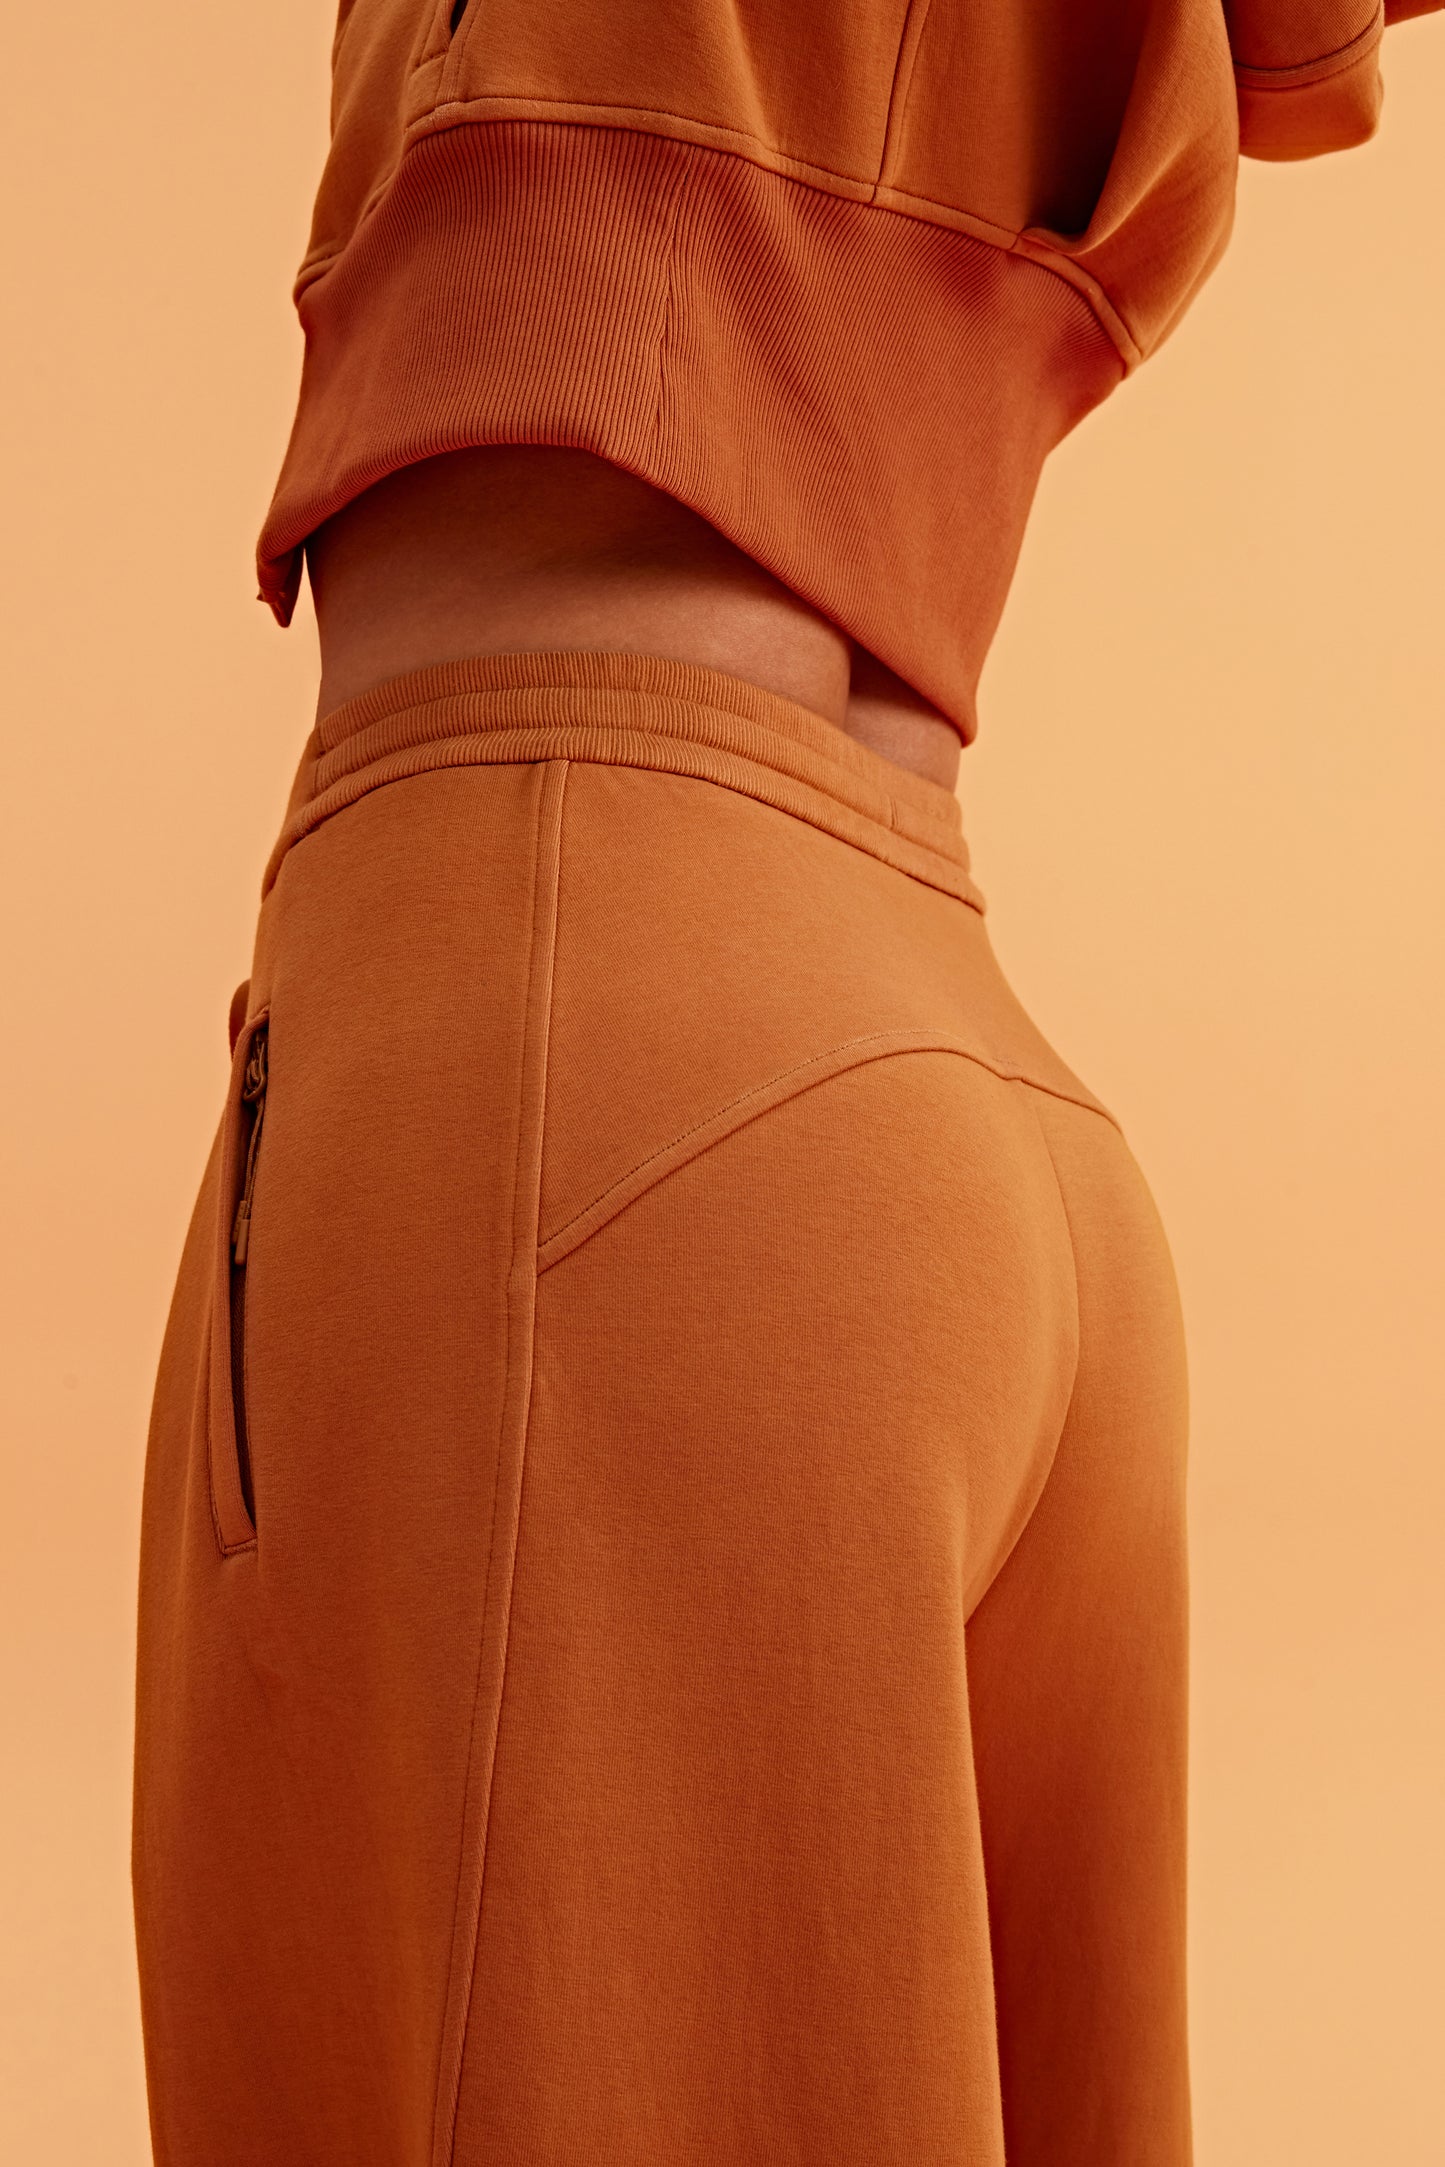 close up of caramel pants